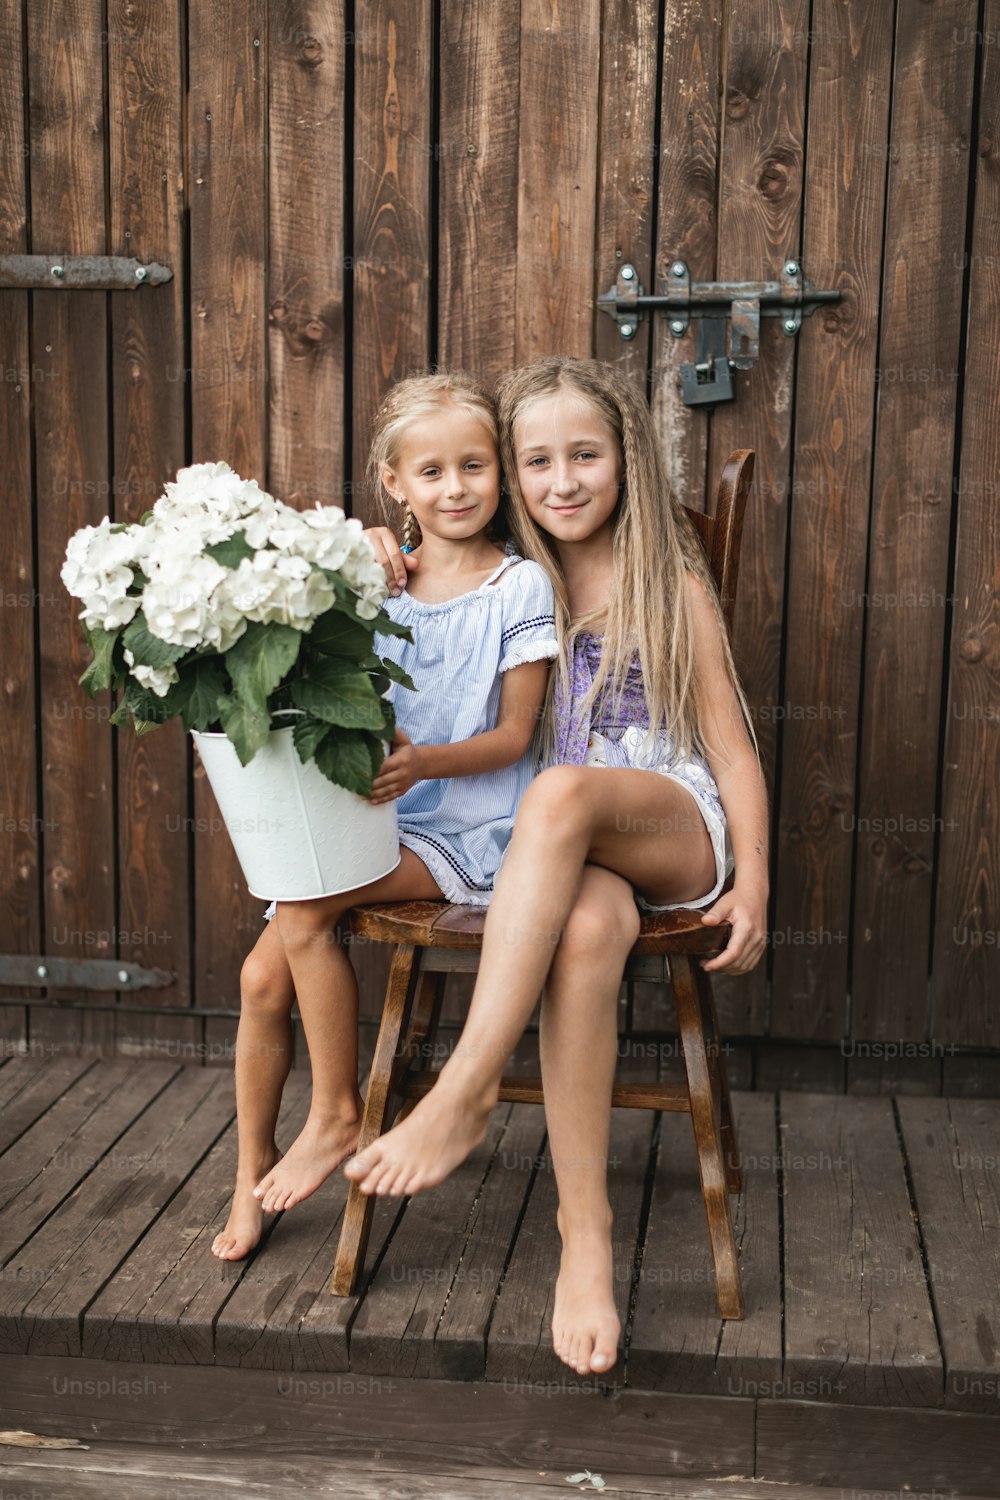 Dos chicas de cabello rubio feliz, hermanas o amigas, sentadas juntas en la silla de madera cerca del viejo granero de madera al aire libre y sosteniendo un ramo de flores, hortensias blancas en un balde.